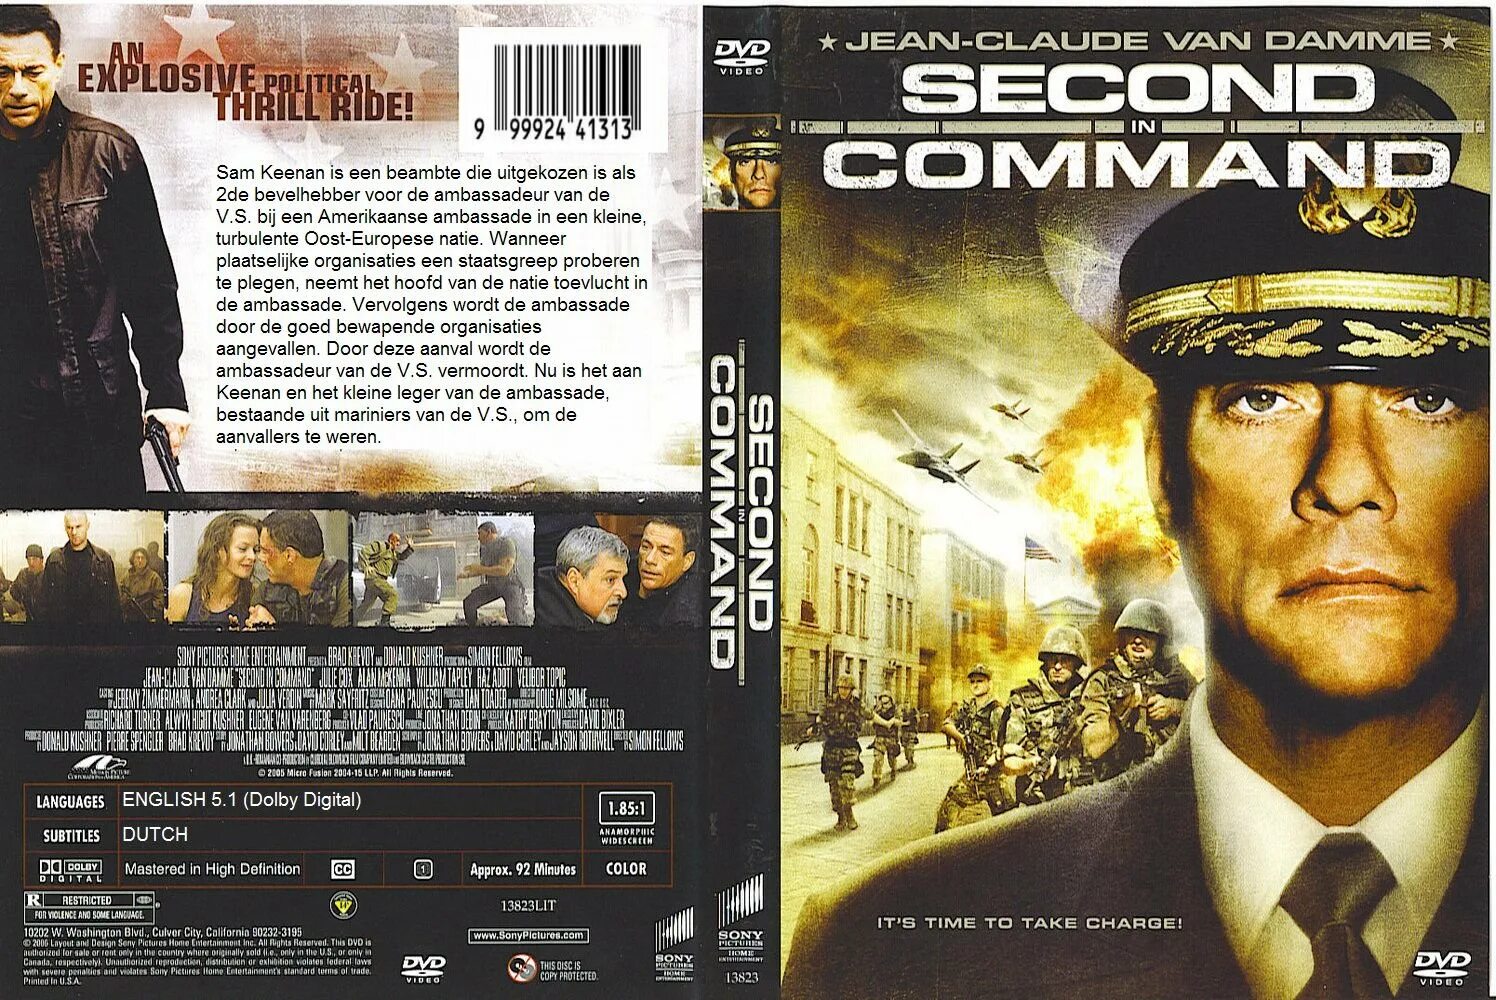 Второй в команде 2006. Второй в команде second in Command (2006). DVD 2006. Hours away